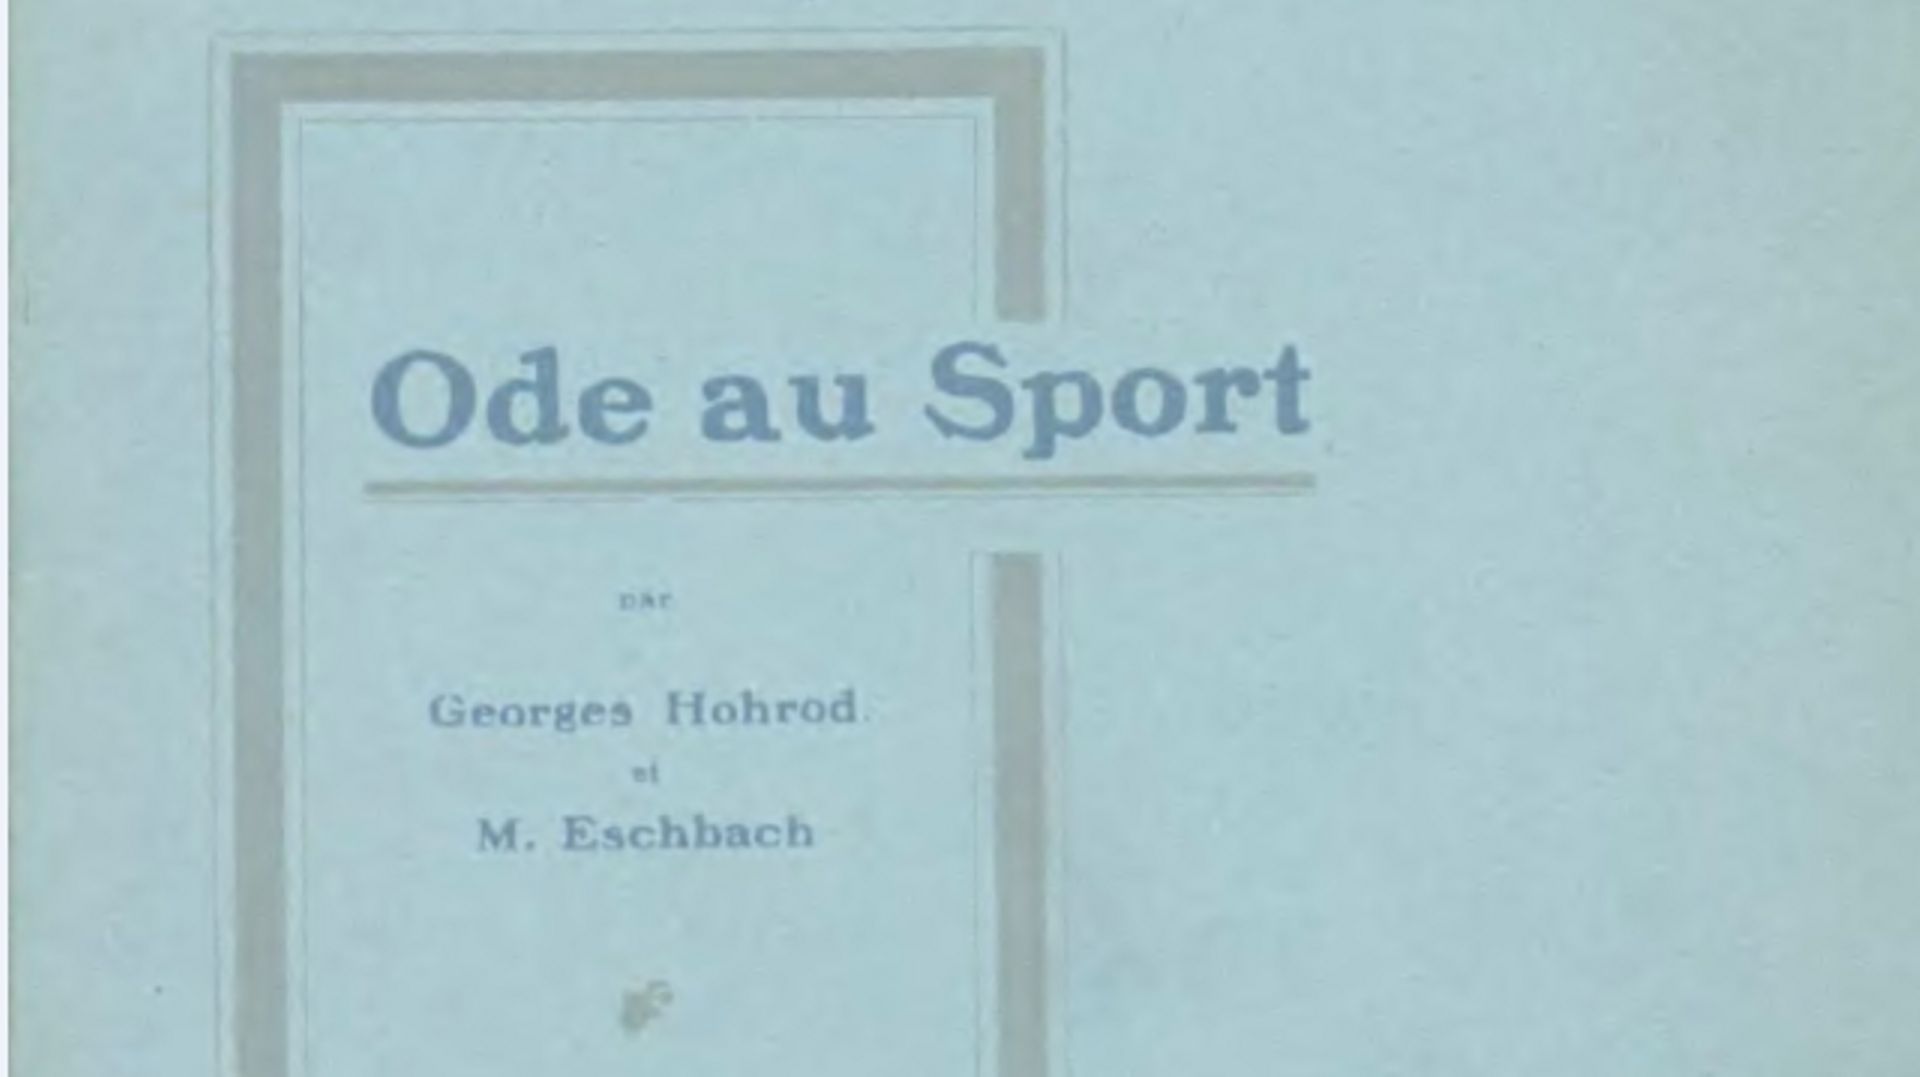 Pierre de Coubertin a été champion olympique, pour son "Ode au Sport"